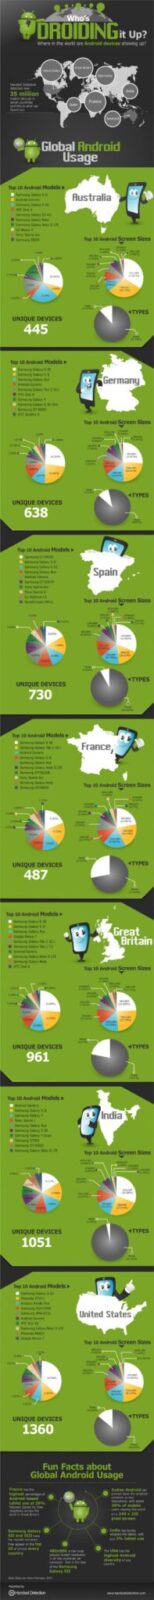 infographie android Infographie : Les Android Phones les plus vendus par pays Actualité